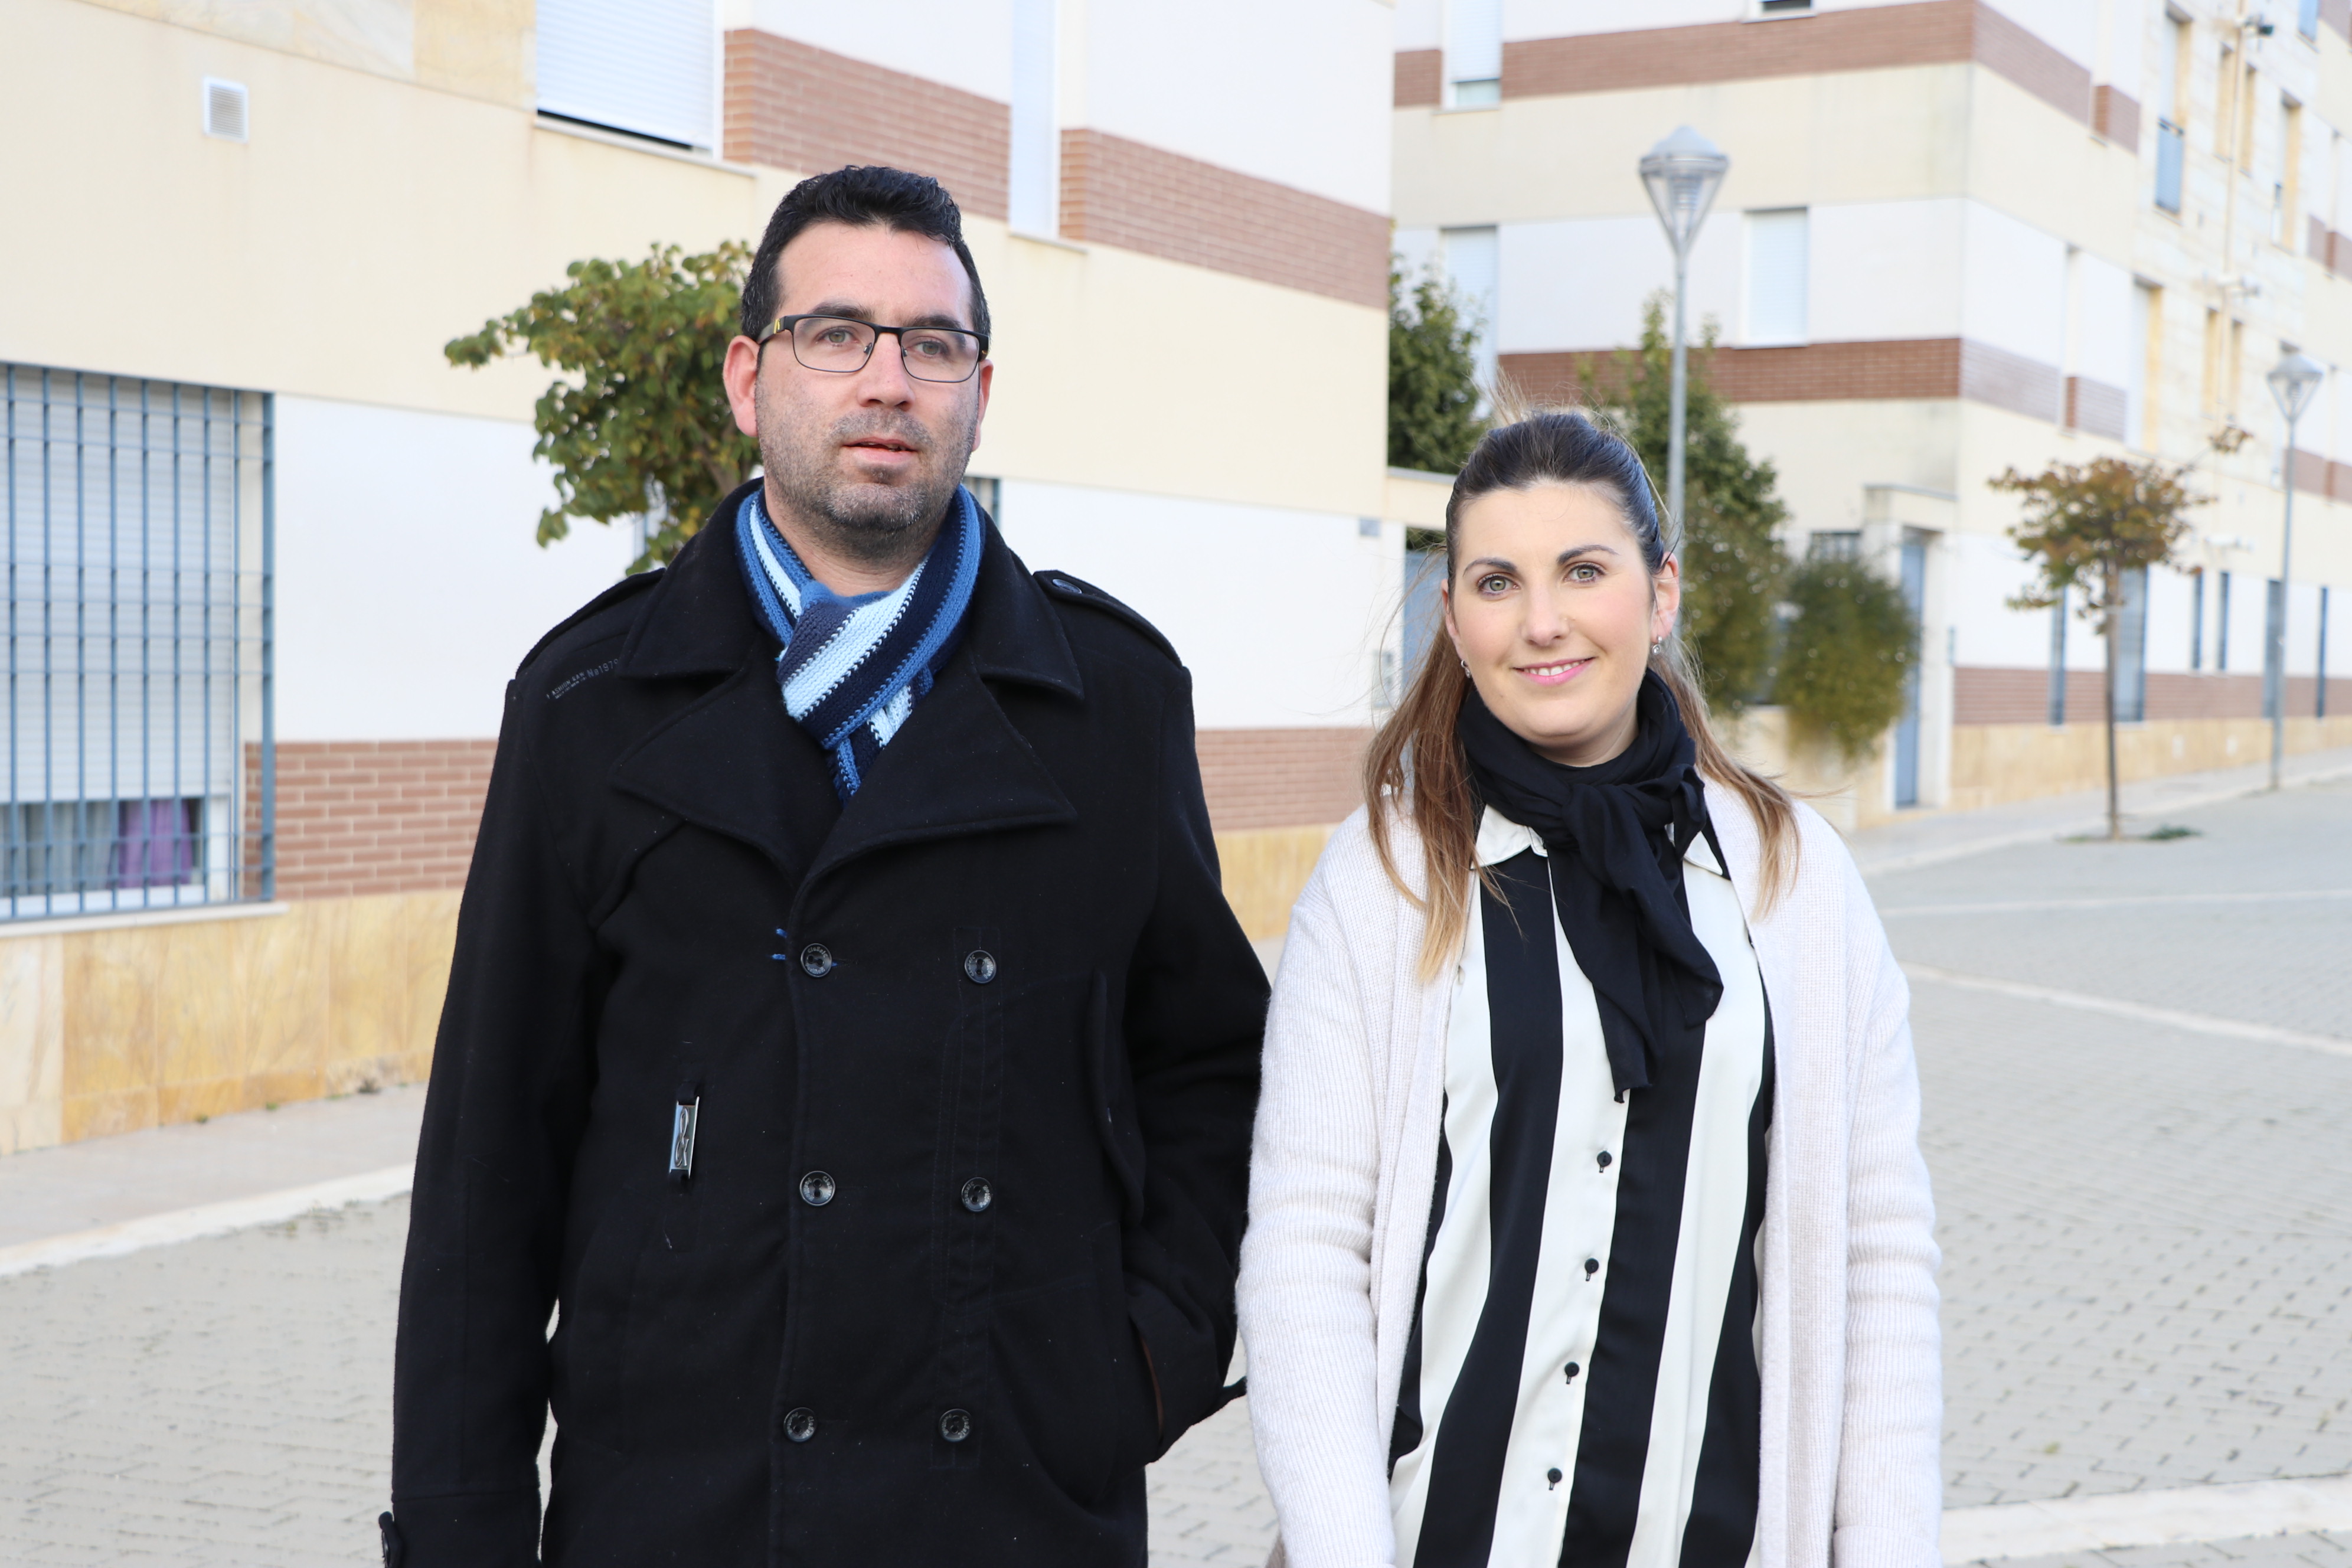 María del Mar Díaz y Daniel Jiménez, miembros de la junta directiva de la nueva asociación de vecinos